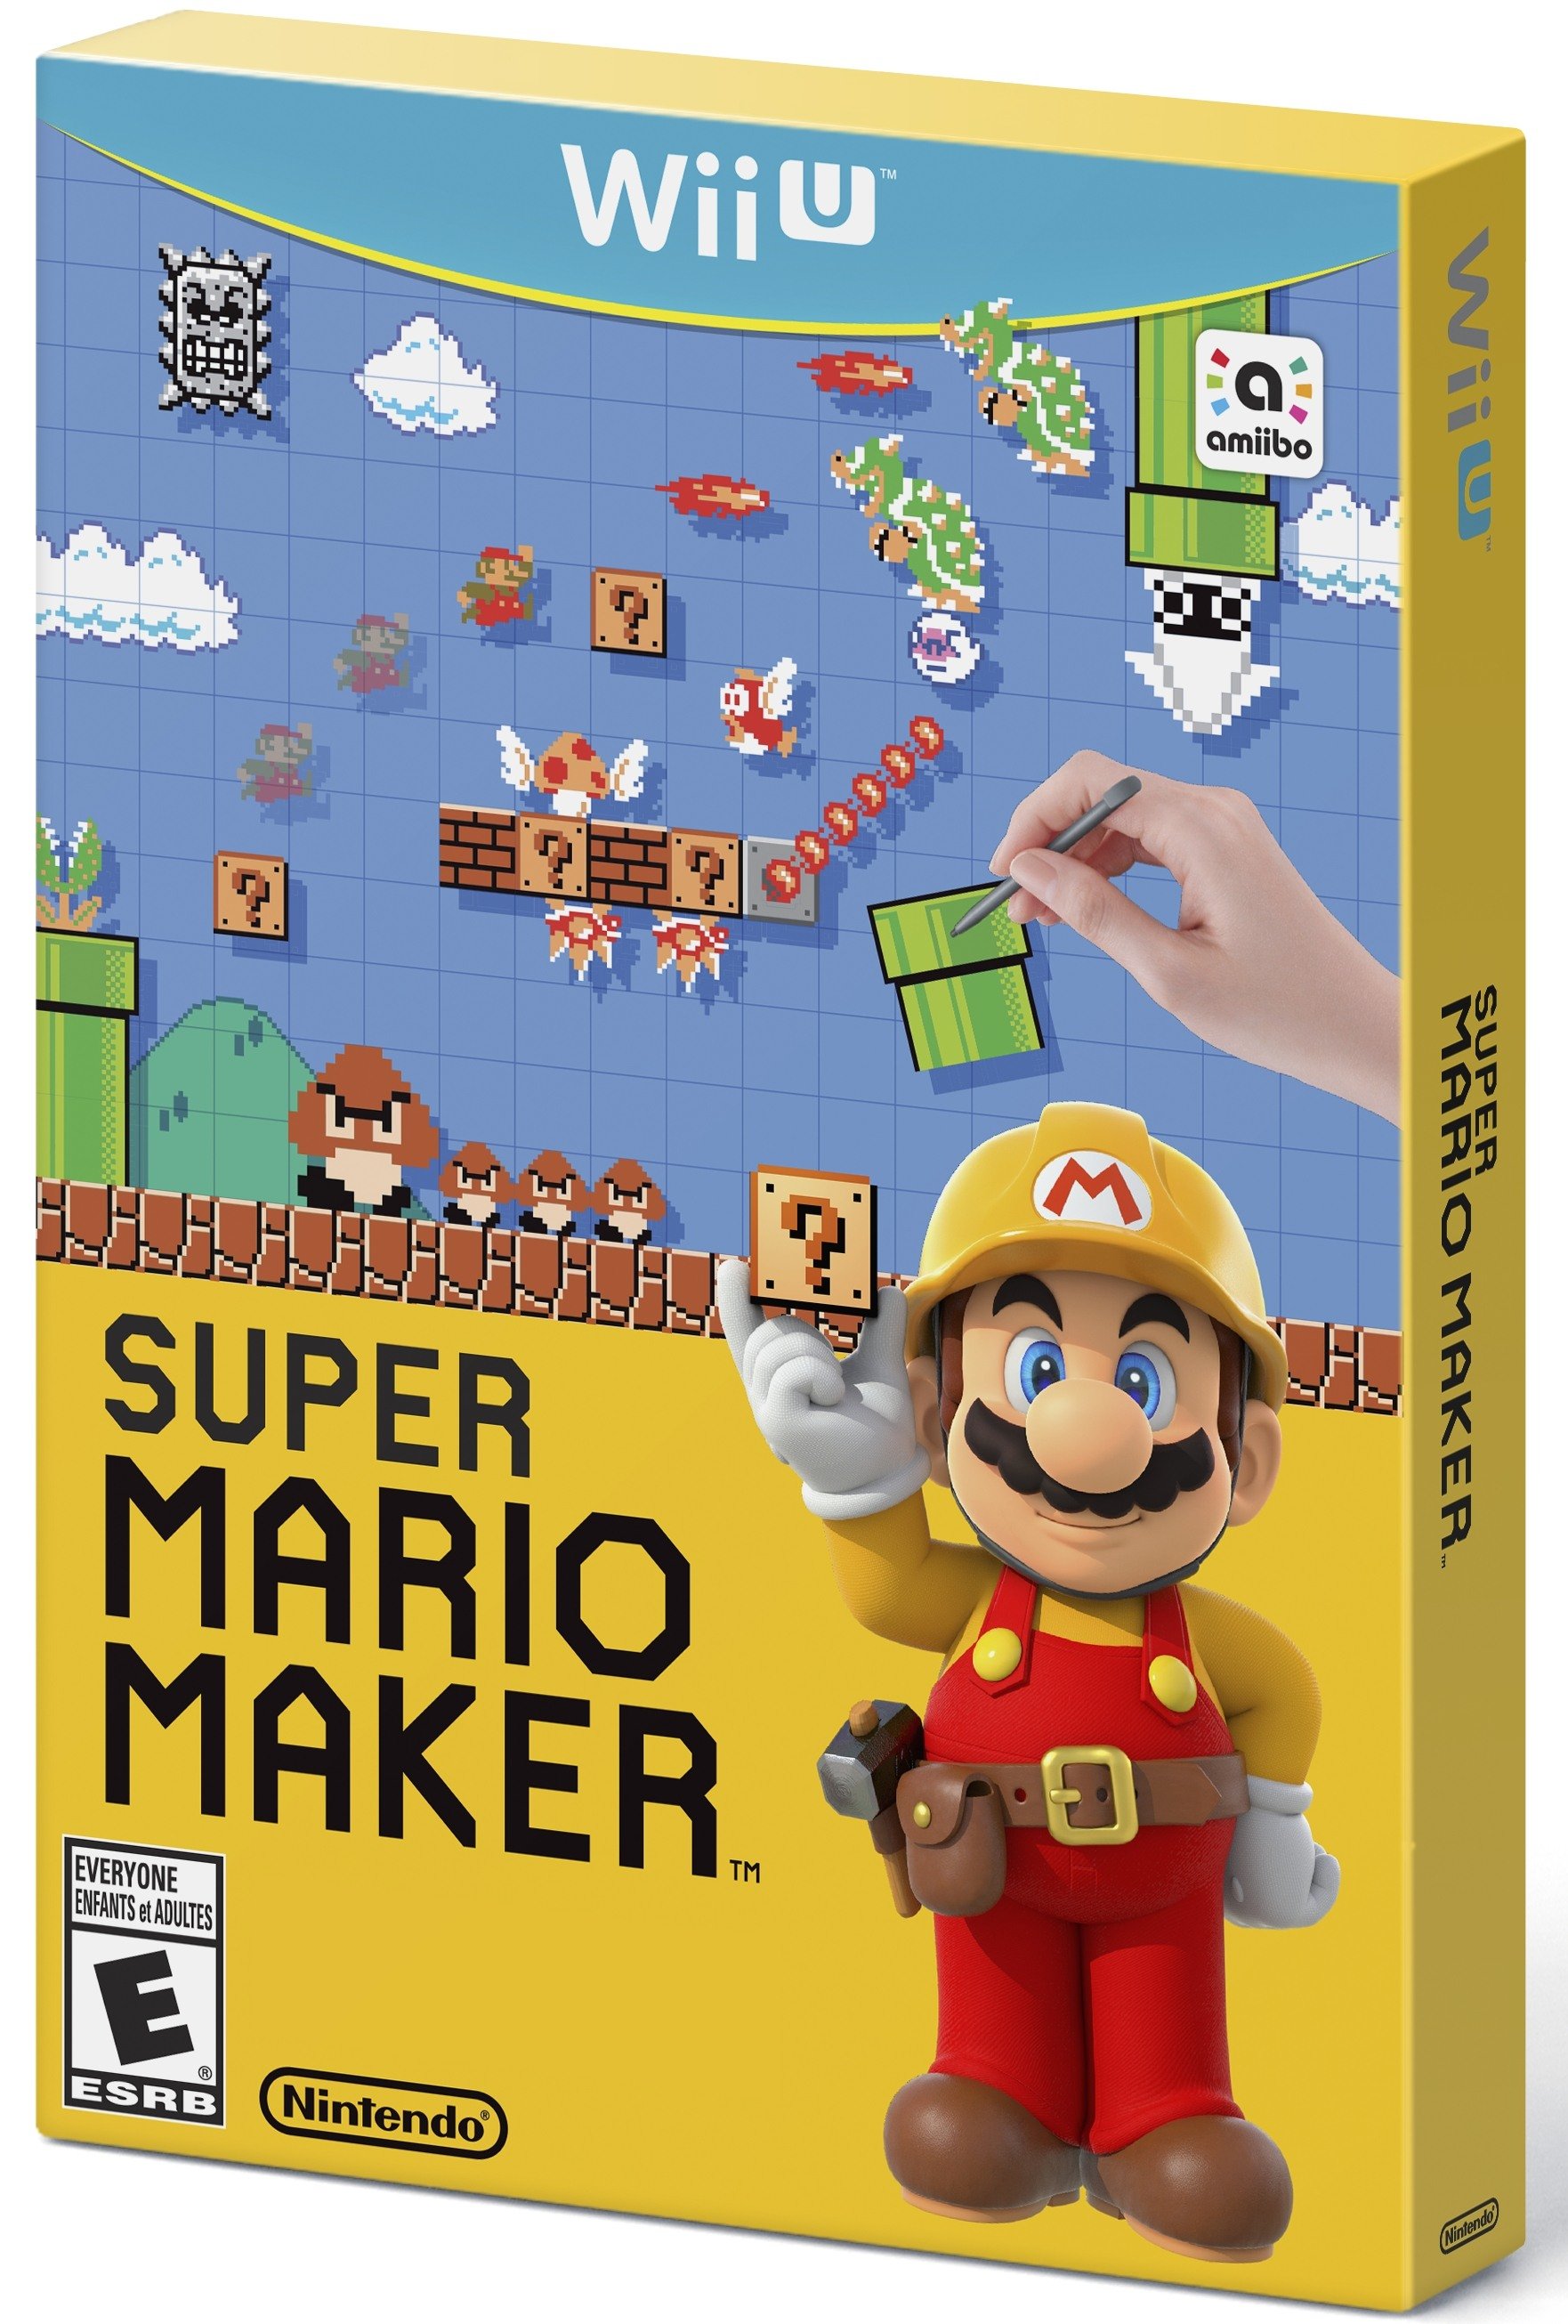 Super Mario Maker - Wikipedia